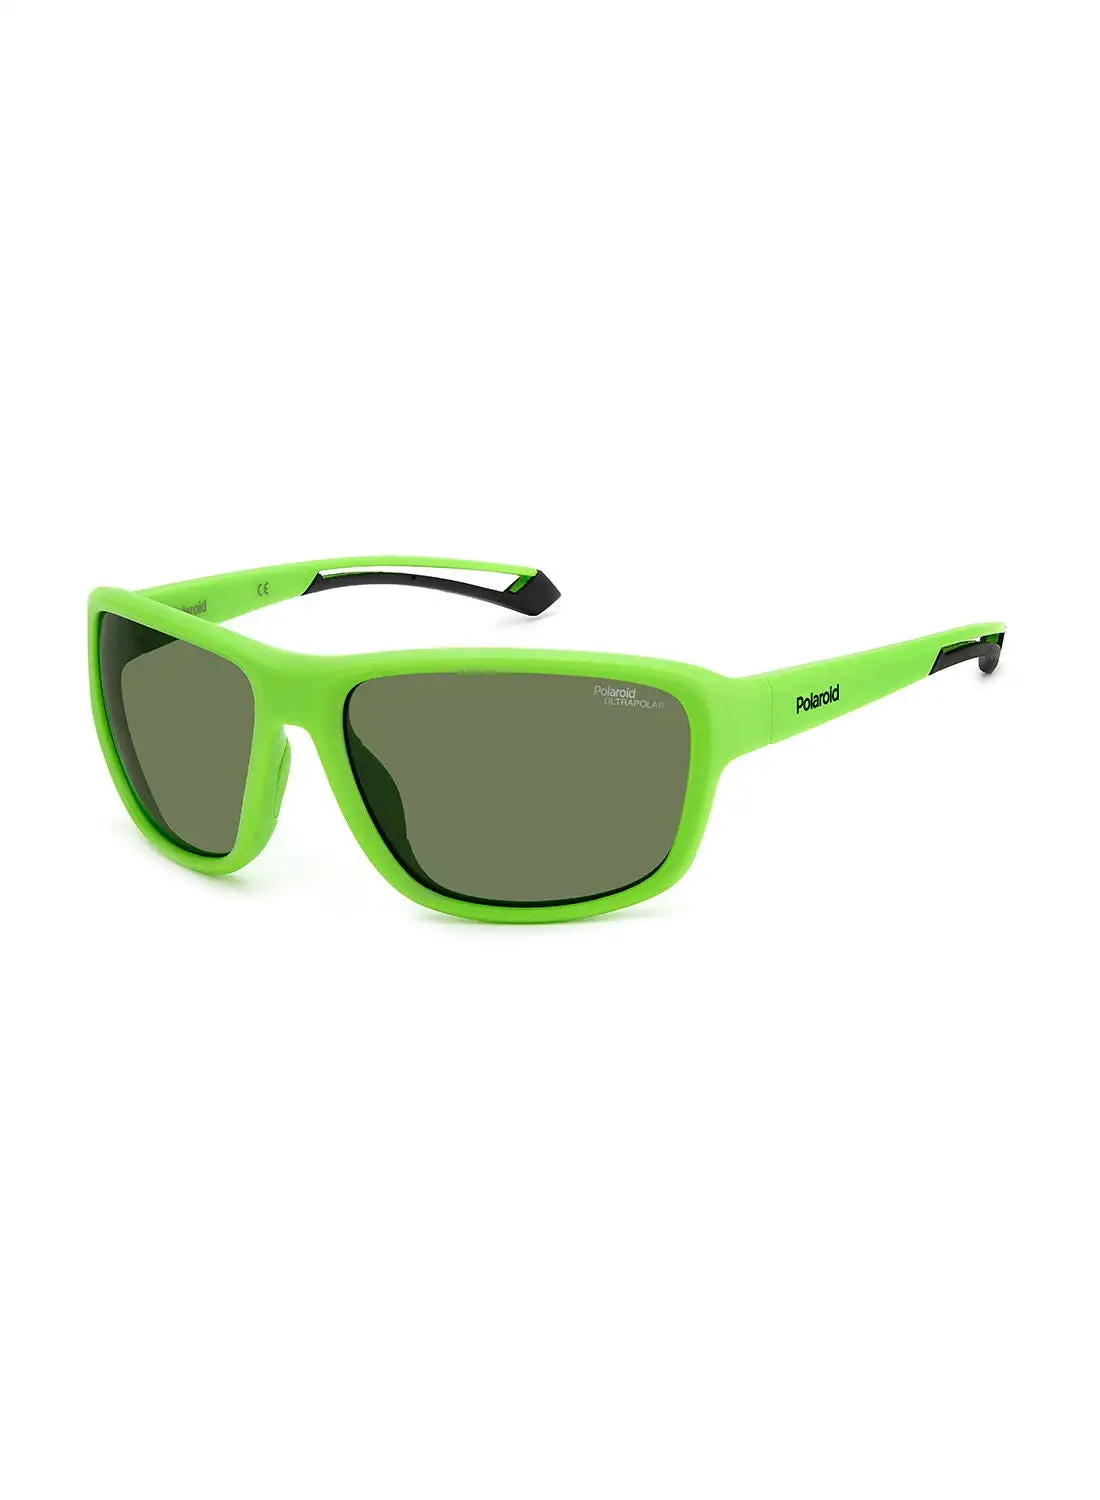 Polaroid Unisex UV Protection Rectangular Sunglasses - Pld 7049/S Mt Grn 62 - Lens Size: 62 Mm